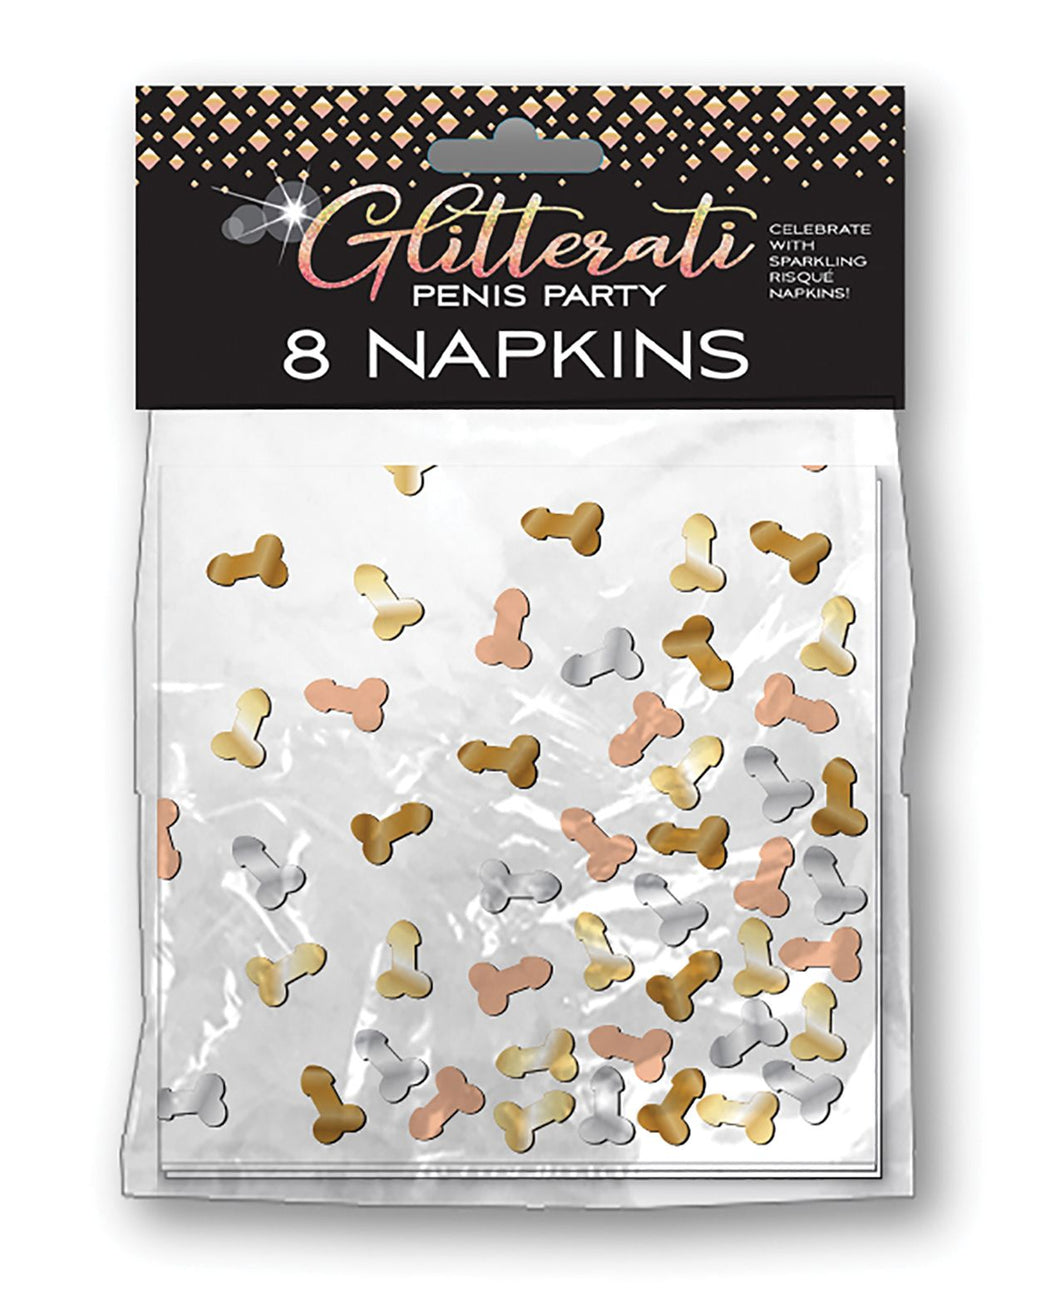 Glitterati Penis Party Napkins -  8 Pack